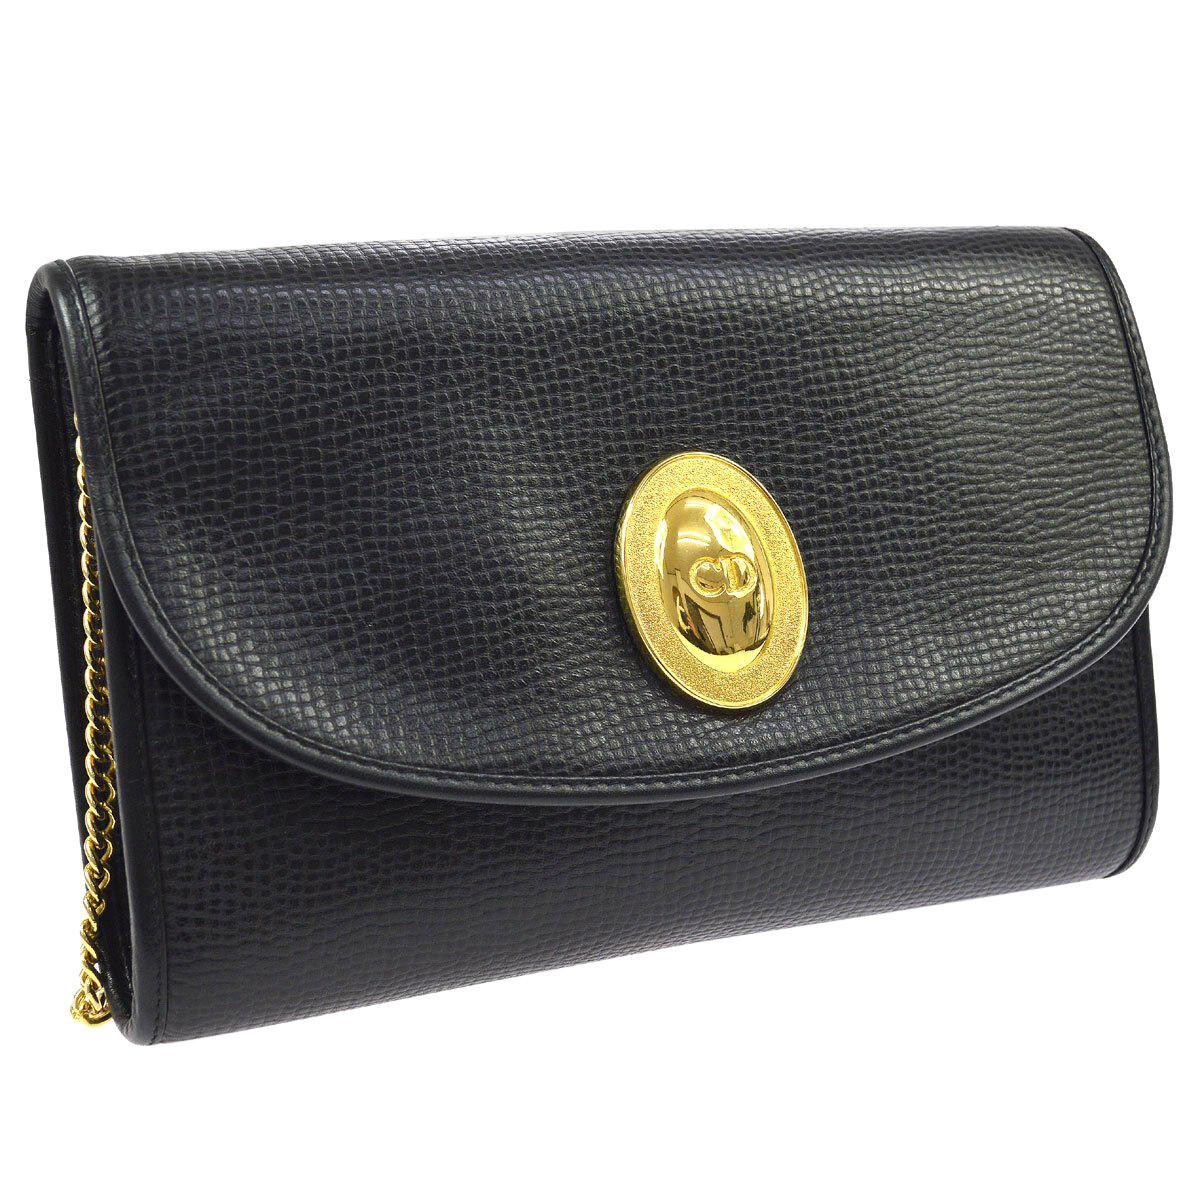 Christian Dior Black Leather Gold Emblem Logo 2 in 1 Clutch Shoulder Flap Bag